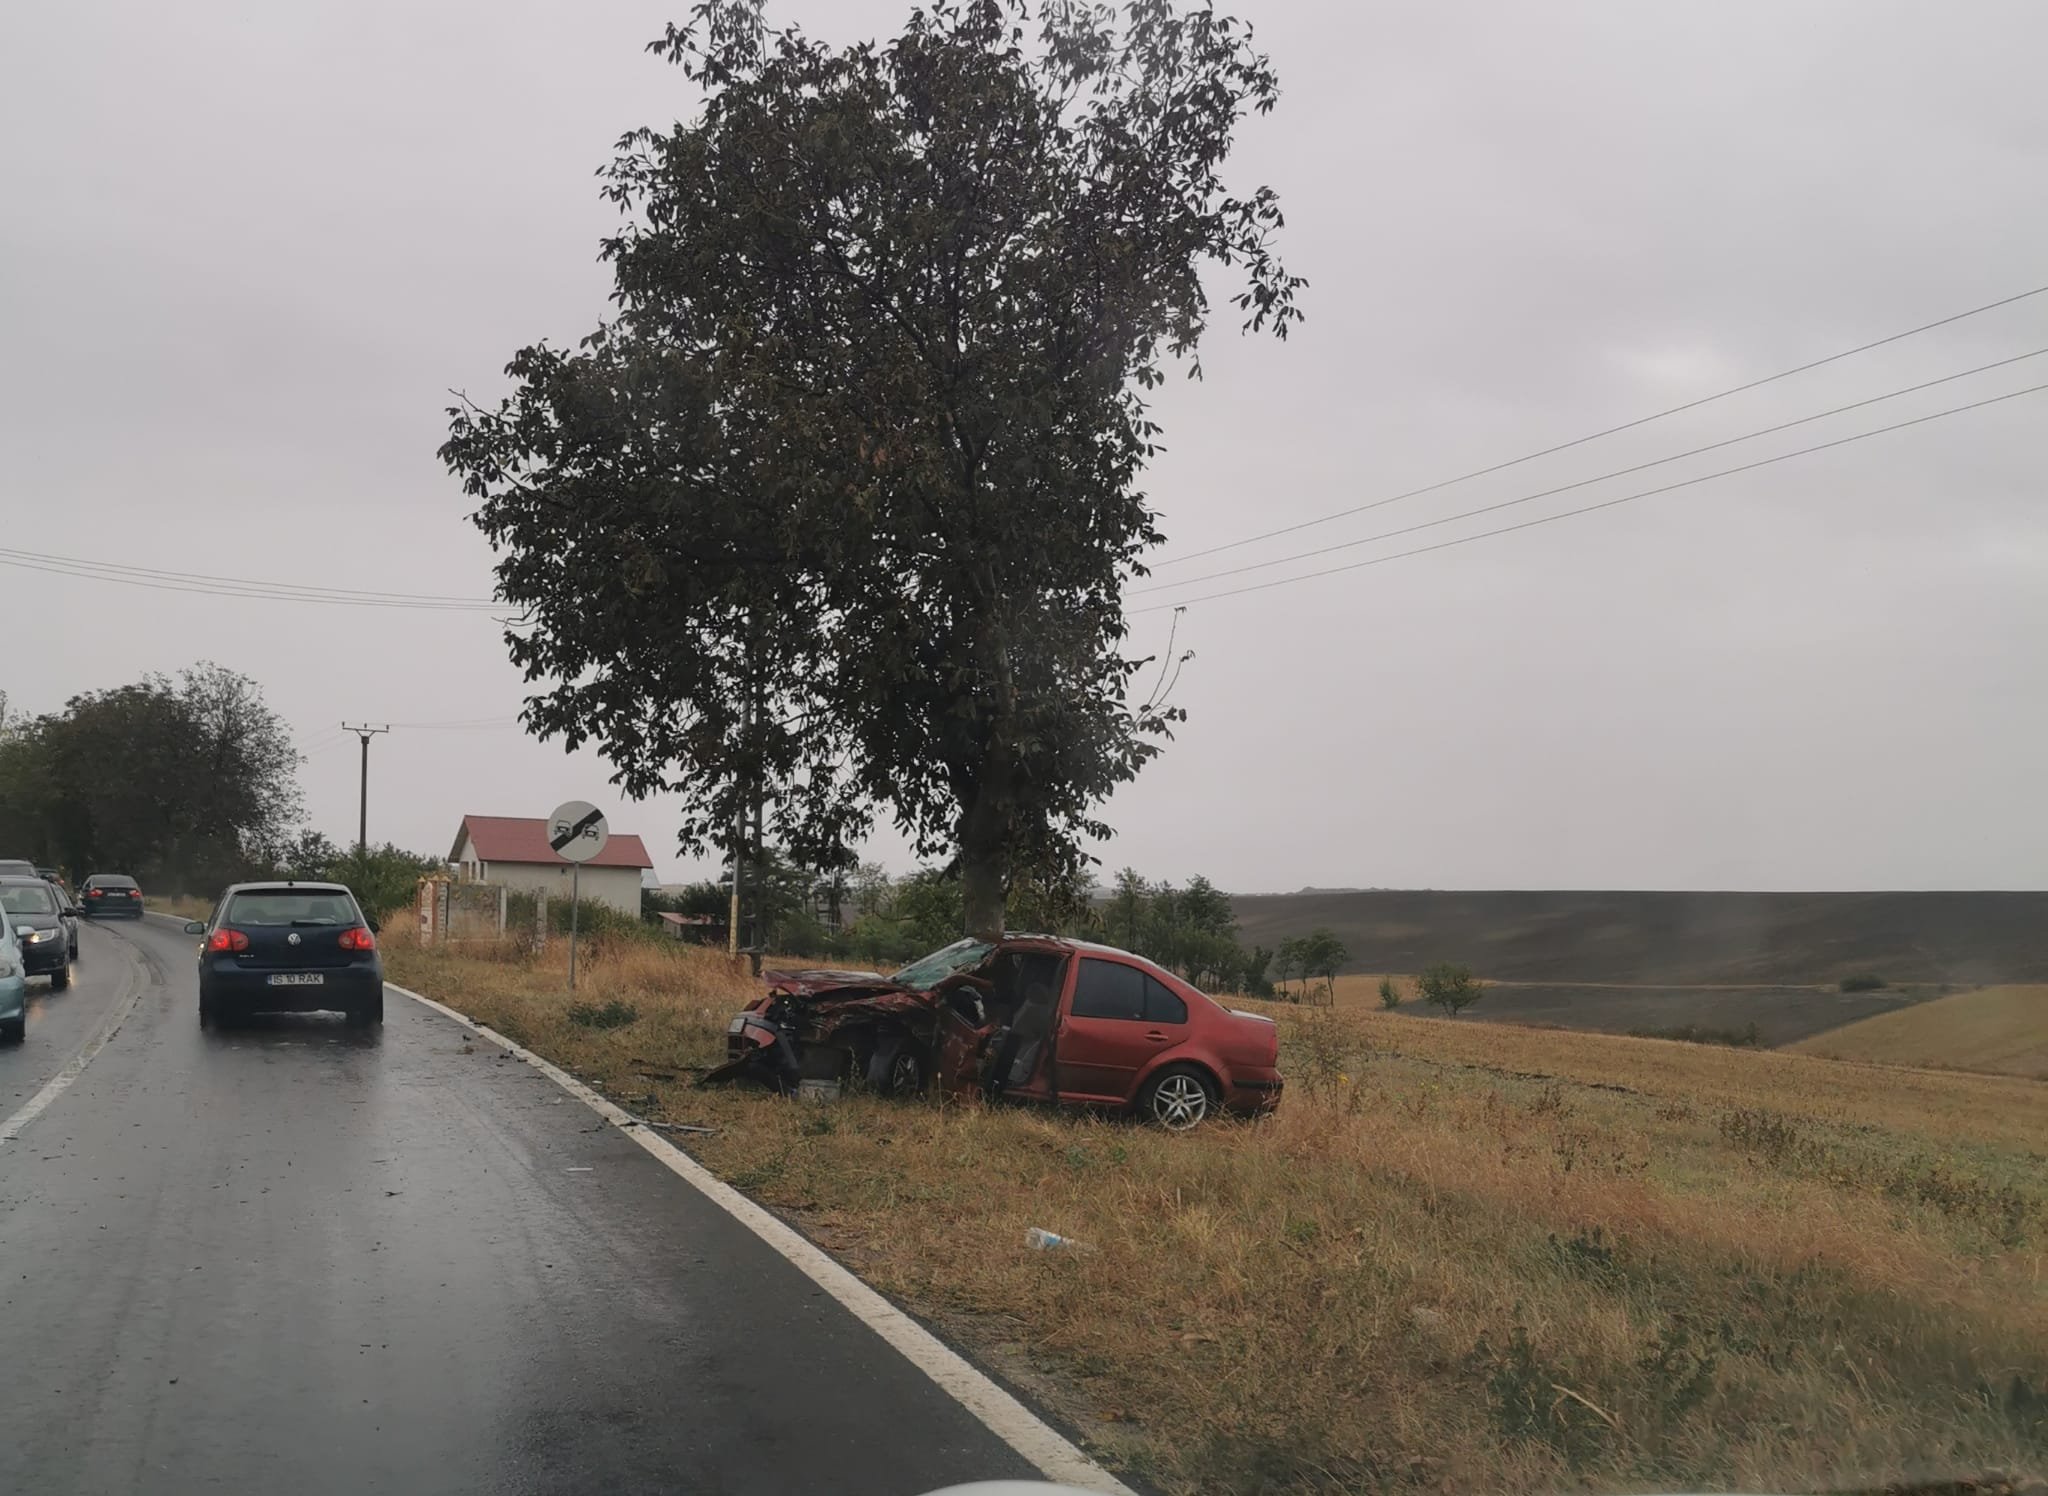  Impact violent între două autoturisme în zona comunei Popricani